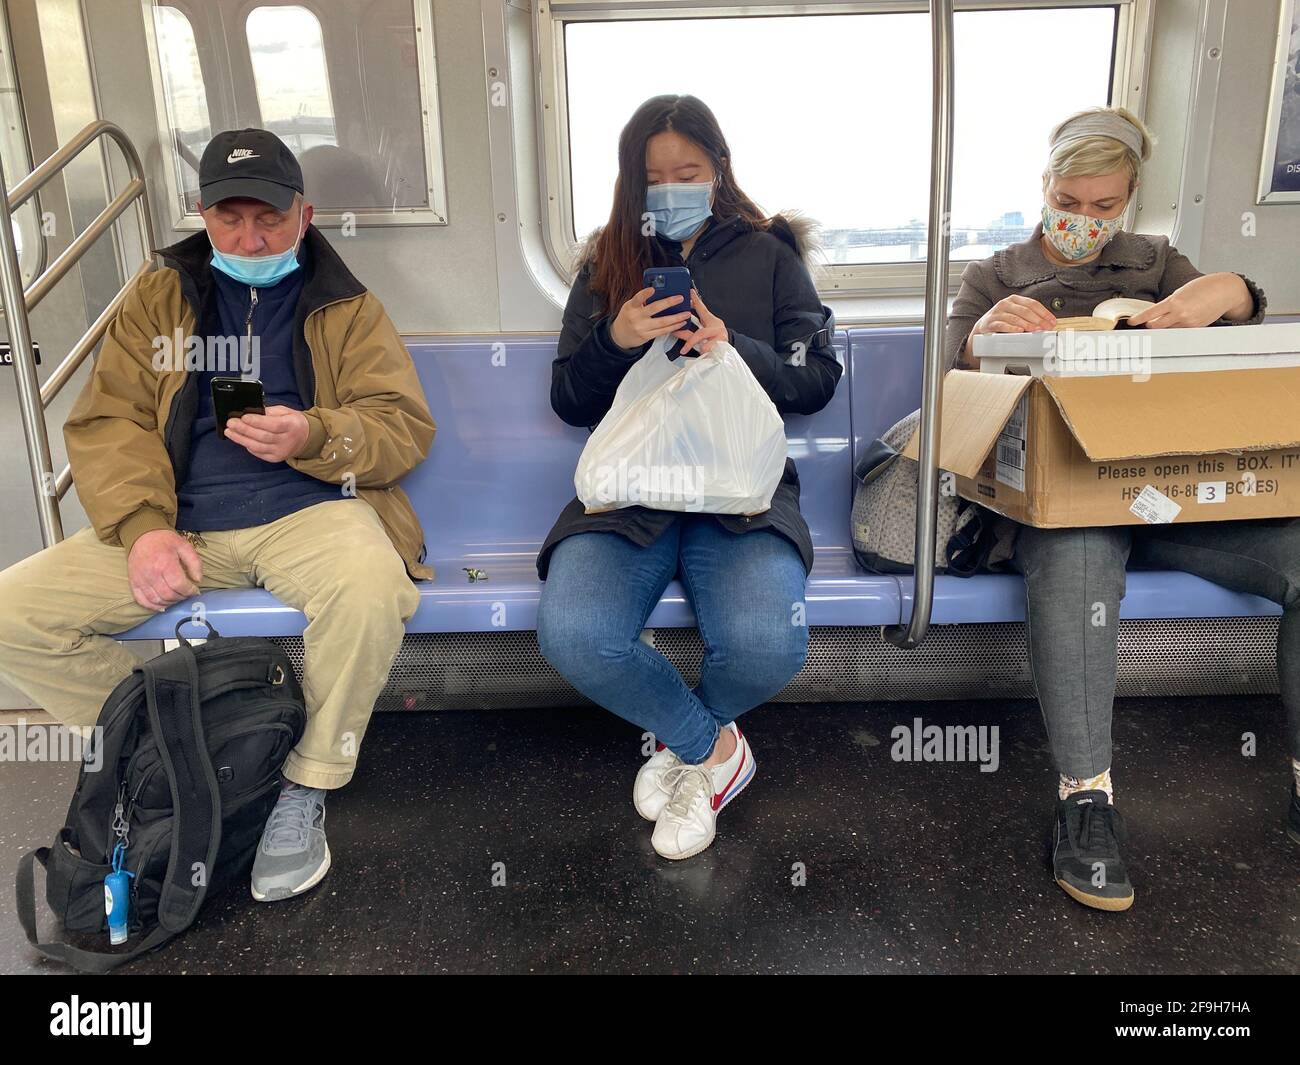 Drei U-Bahnfahrer in Brooklyn während der Covid-19-Pandemie zu Beginn des zweiten Jahres des Virus. Sie scheinen sich nicht zu sehr um soziale Distanzierungen zu sorgen. Stockfoto